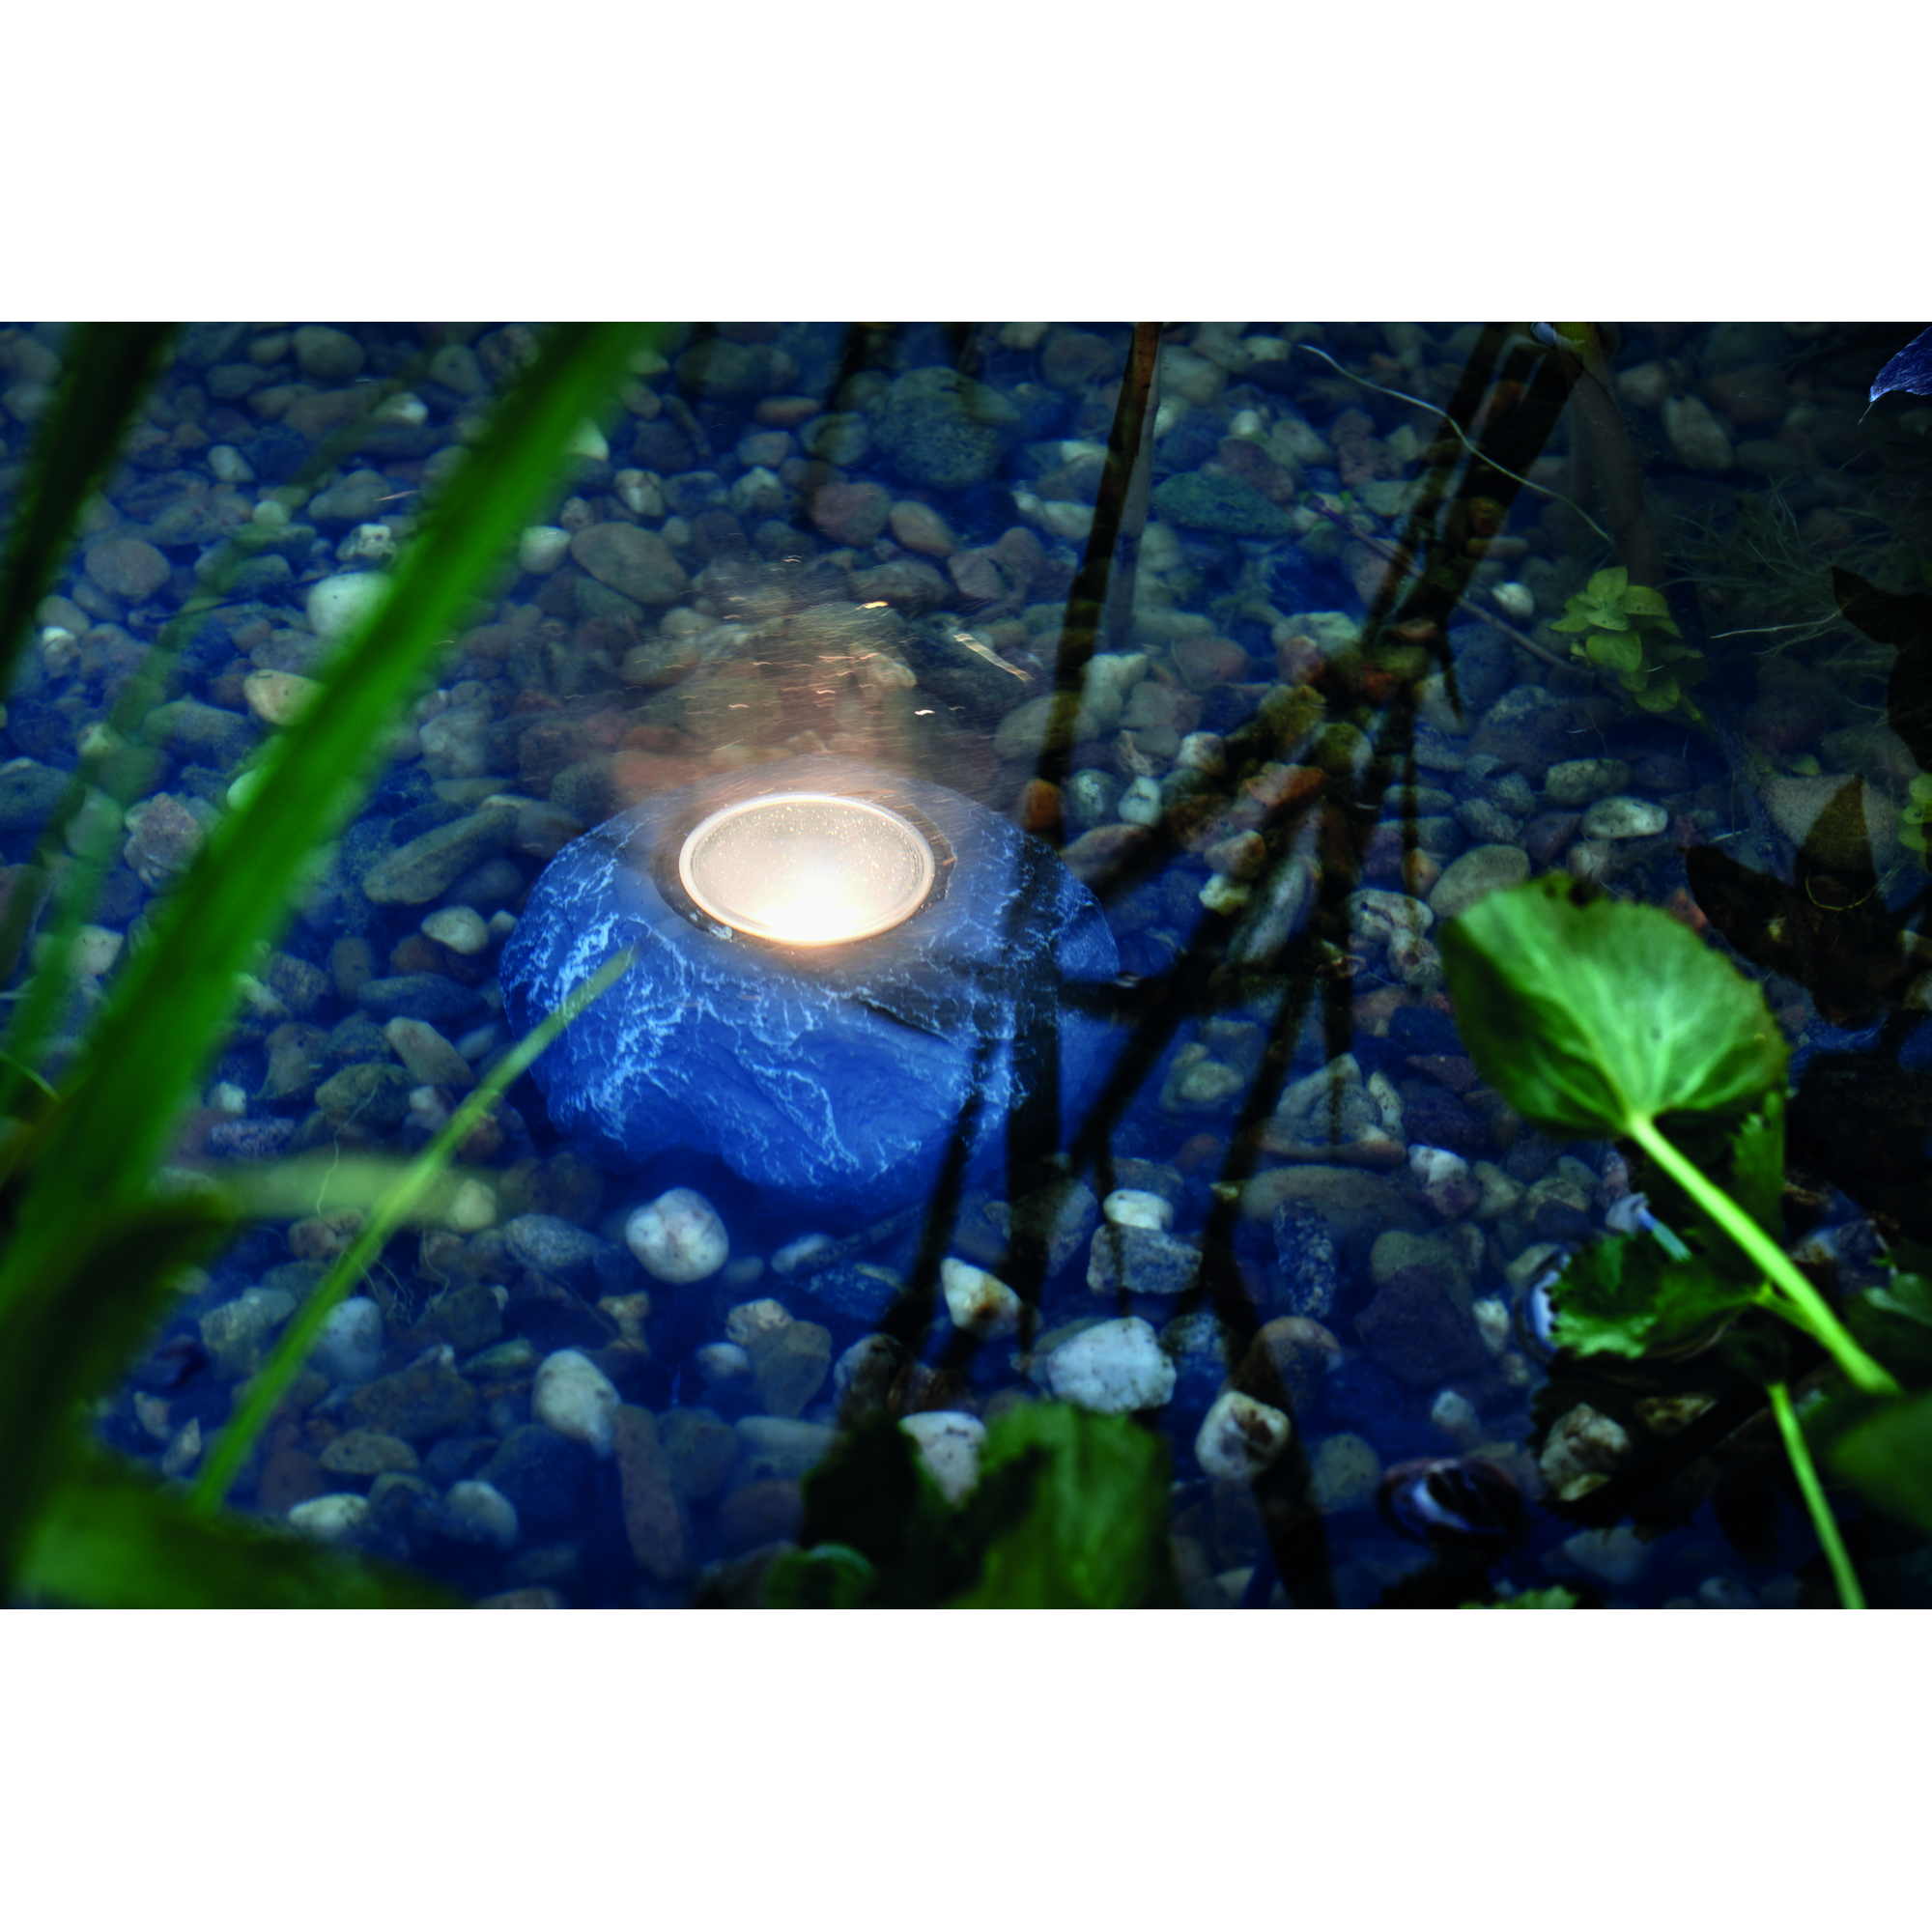 LED-Unterwasserbeleuchtung 'PondoStar' 3 W, 3 Stück + product picture